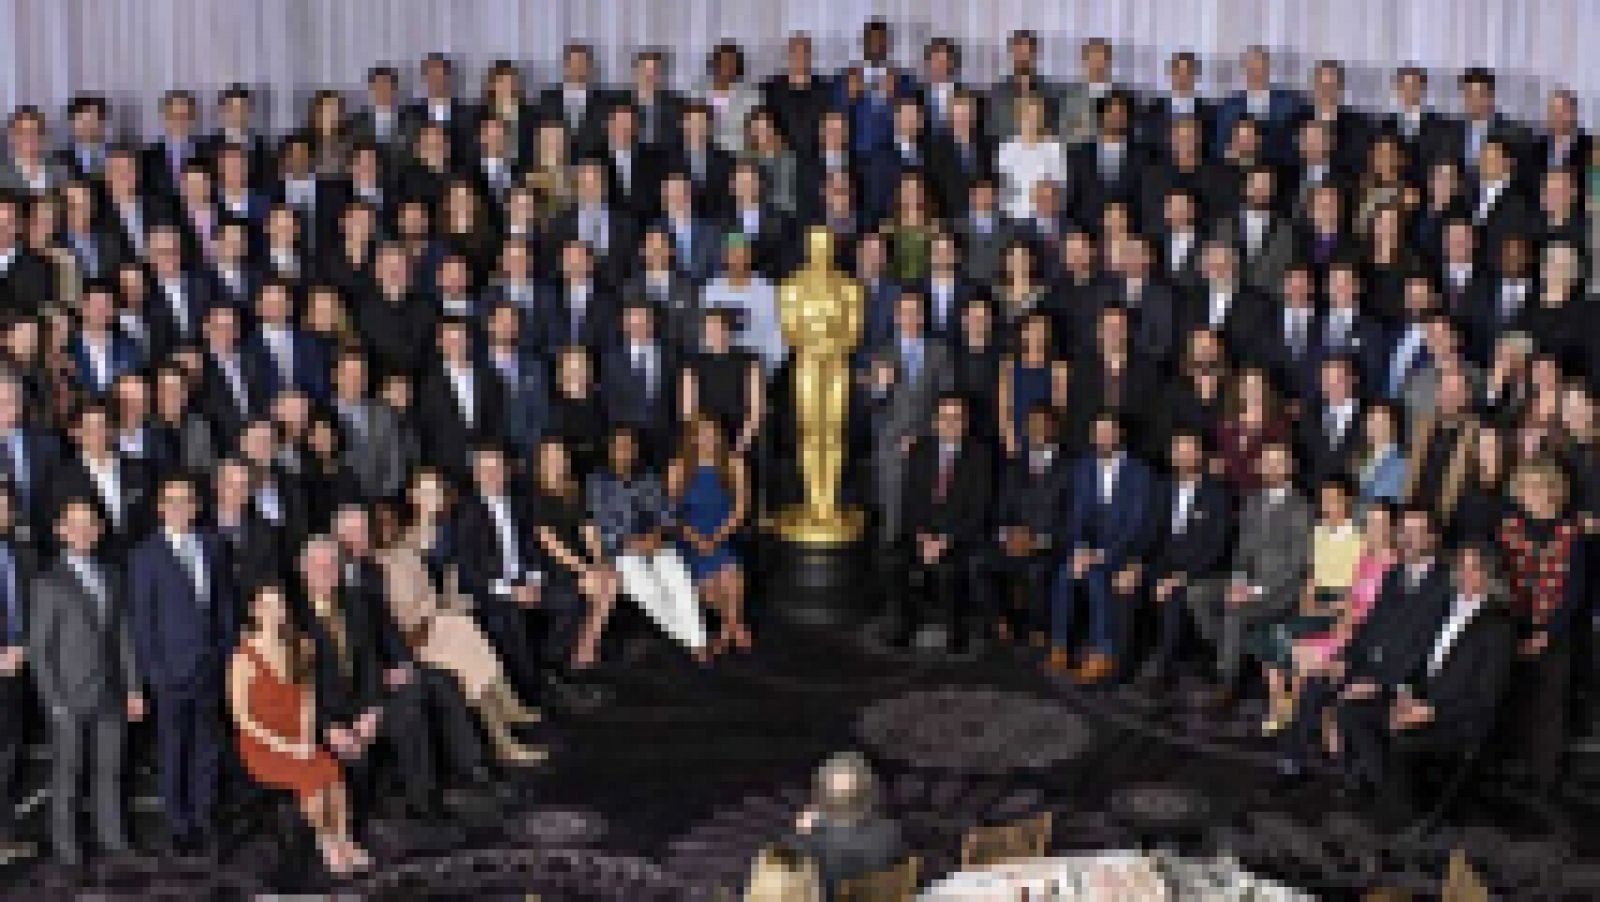 Los nominados al Oscar celebran un almuerzo pleno de diversidad